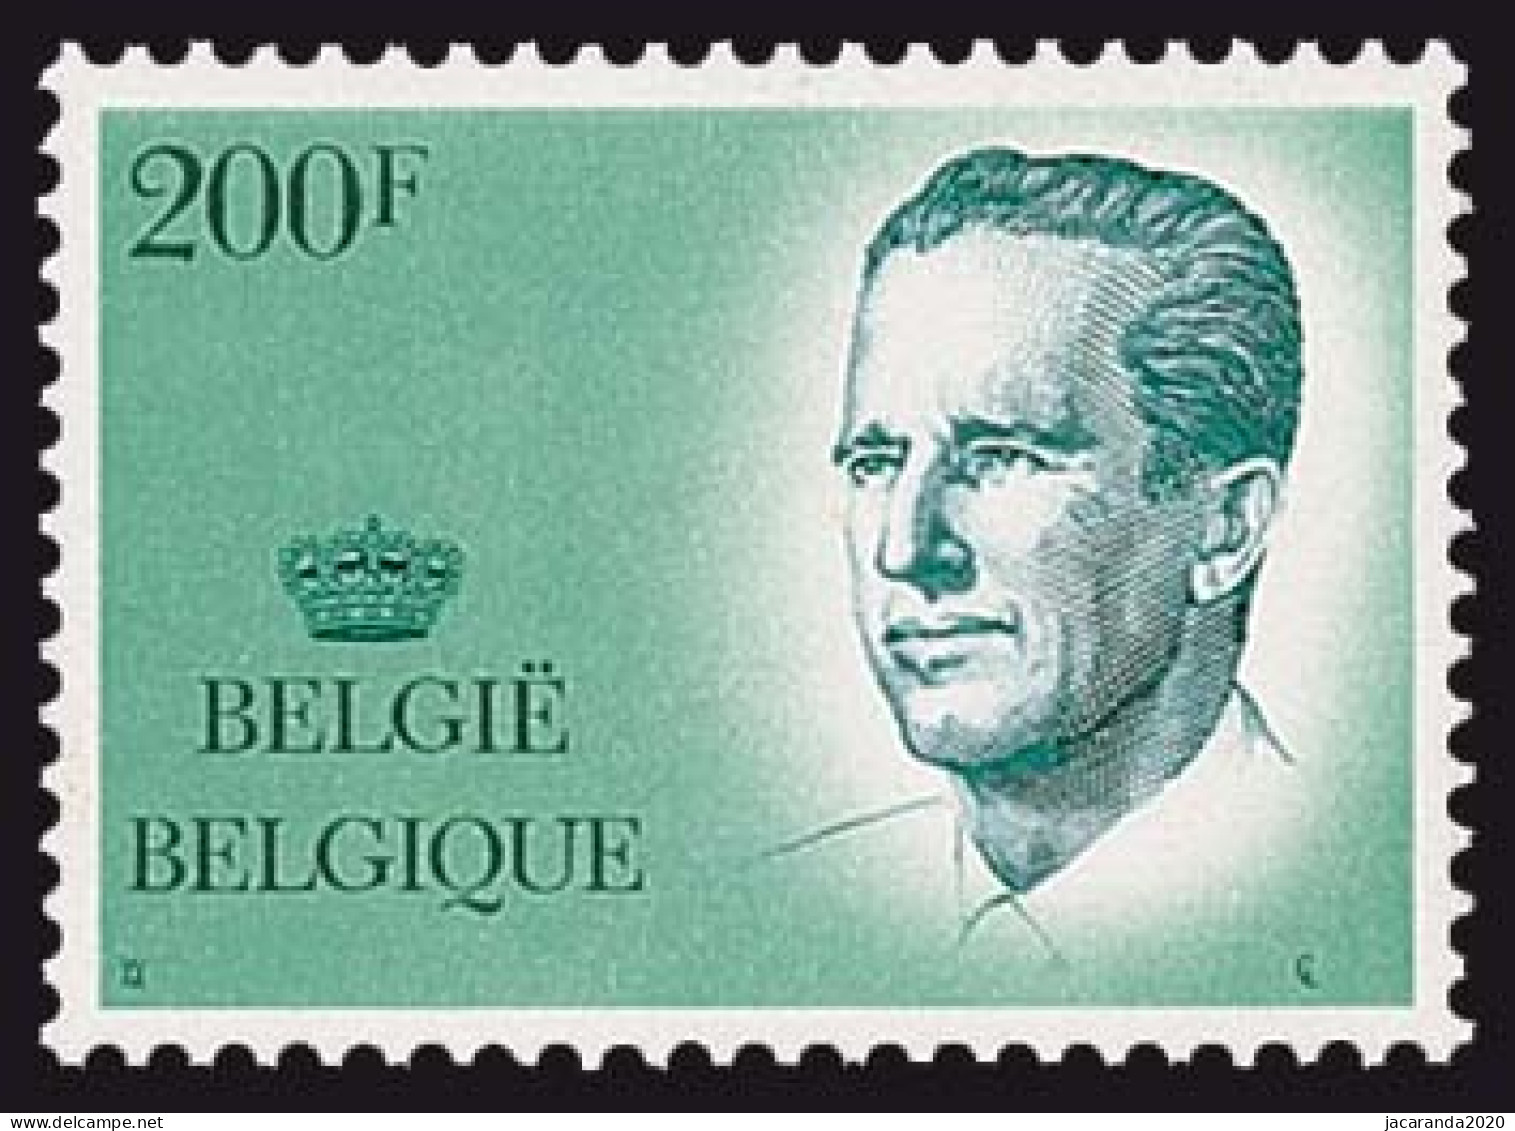 België 2236 - Koning Boudewijn - Roi Baudouin - Ungebraucht